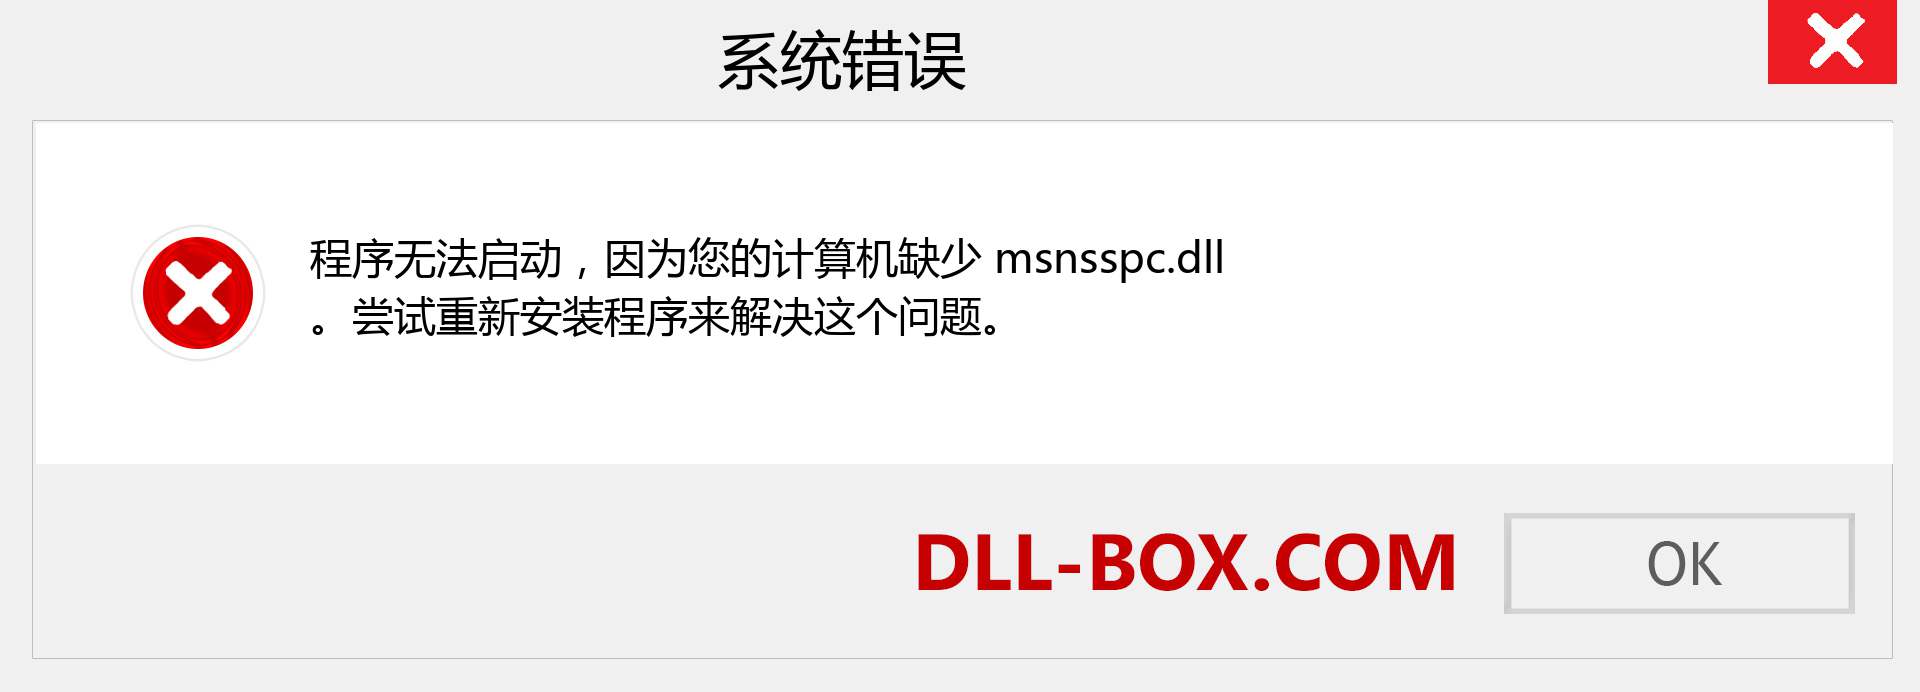 msnsspc.dll 文件丢失？。 适用于 Windows 7、8、10 的下载 - 修复 Windows、照片、图像上的 msnsspc dll 丢失错误